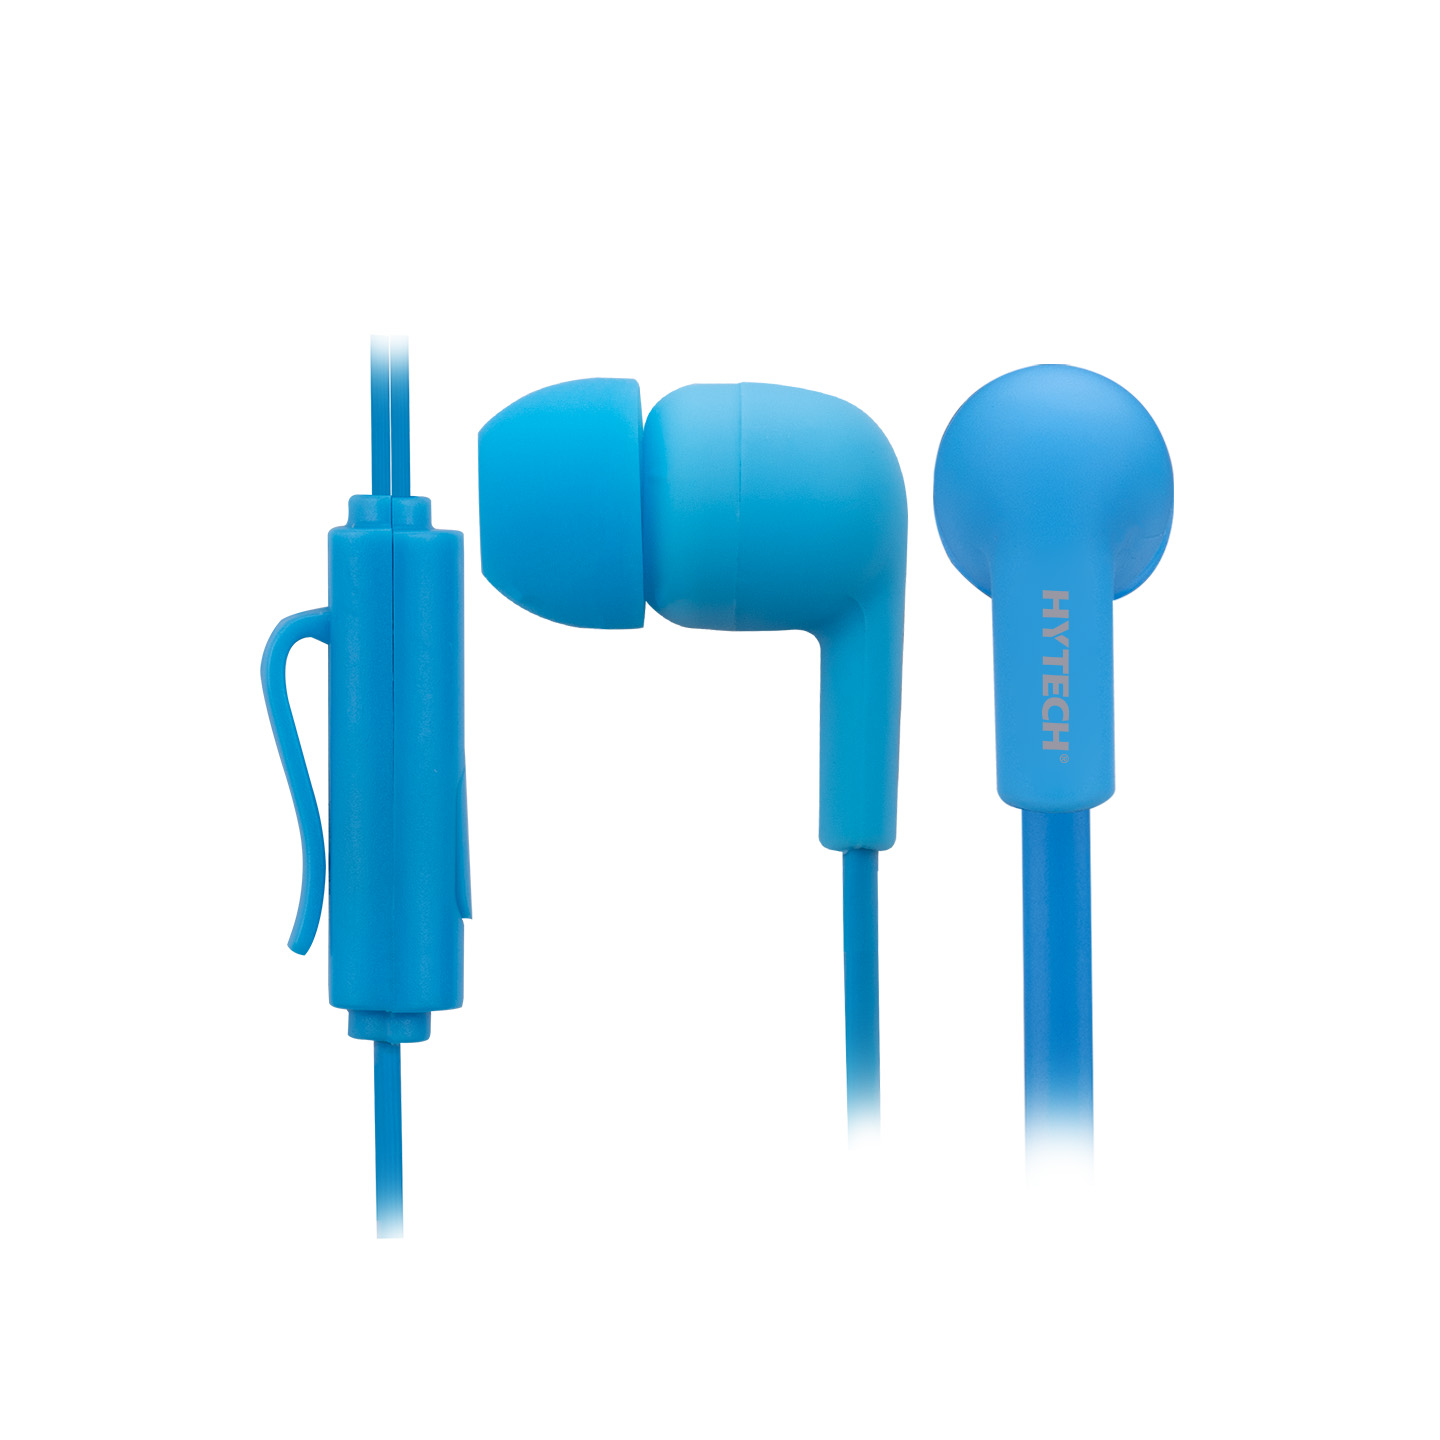 Hdmı Kablolar Hytech Hyxk22 Mobil Telefon Uyumlu Kulak Içi Mikrofonlu Kulaklık,Mavi 